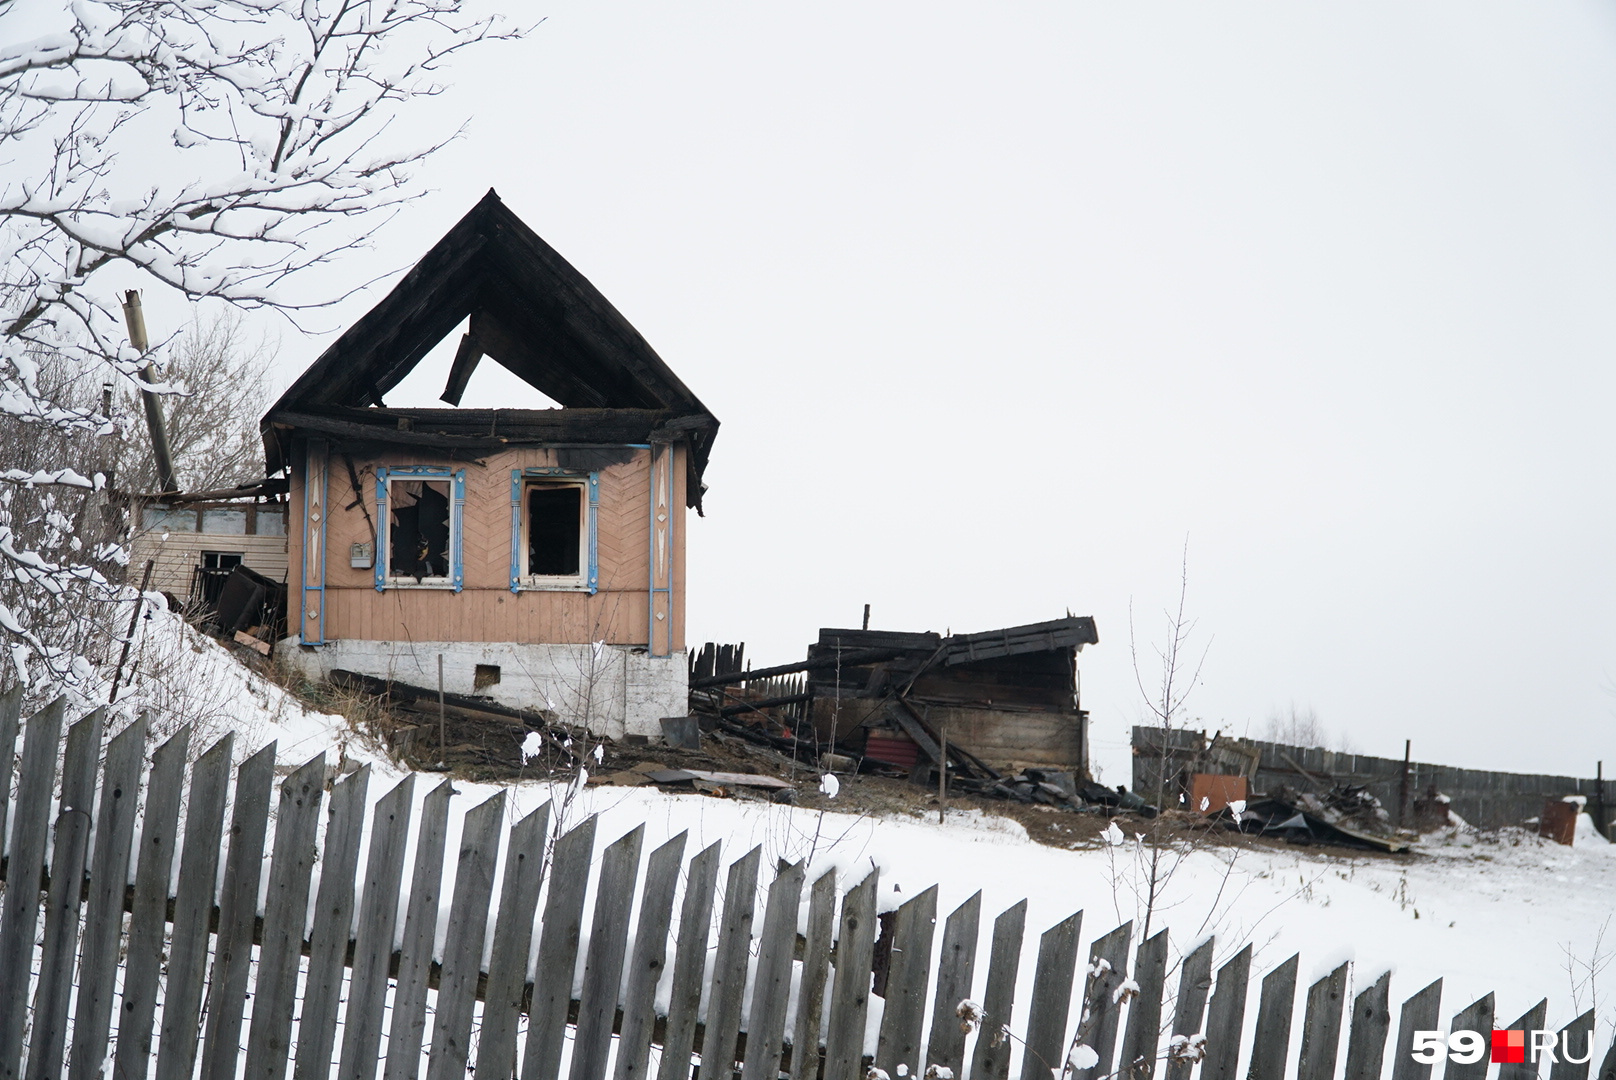 Дом, который сгорел сегодня ночью, построили еще в военные годы